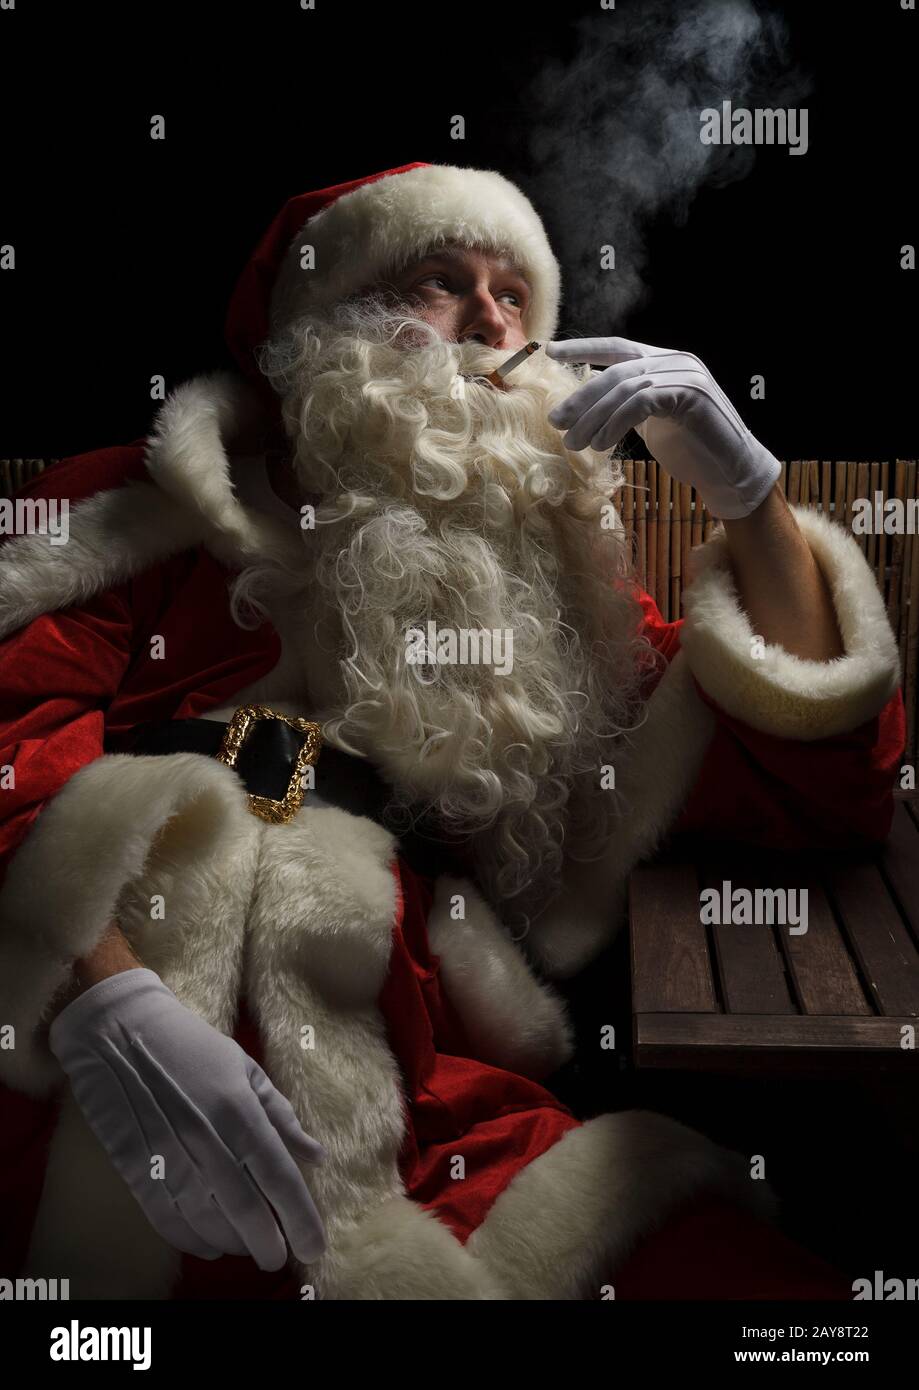 Santa Claus necesita un pequeño descanso y fuma un cigarrillo. Temporada de Navidad y adviento estresante. Foto de stock